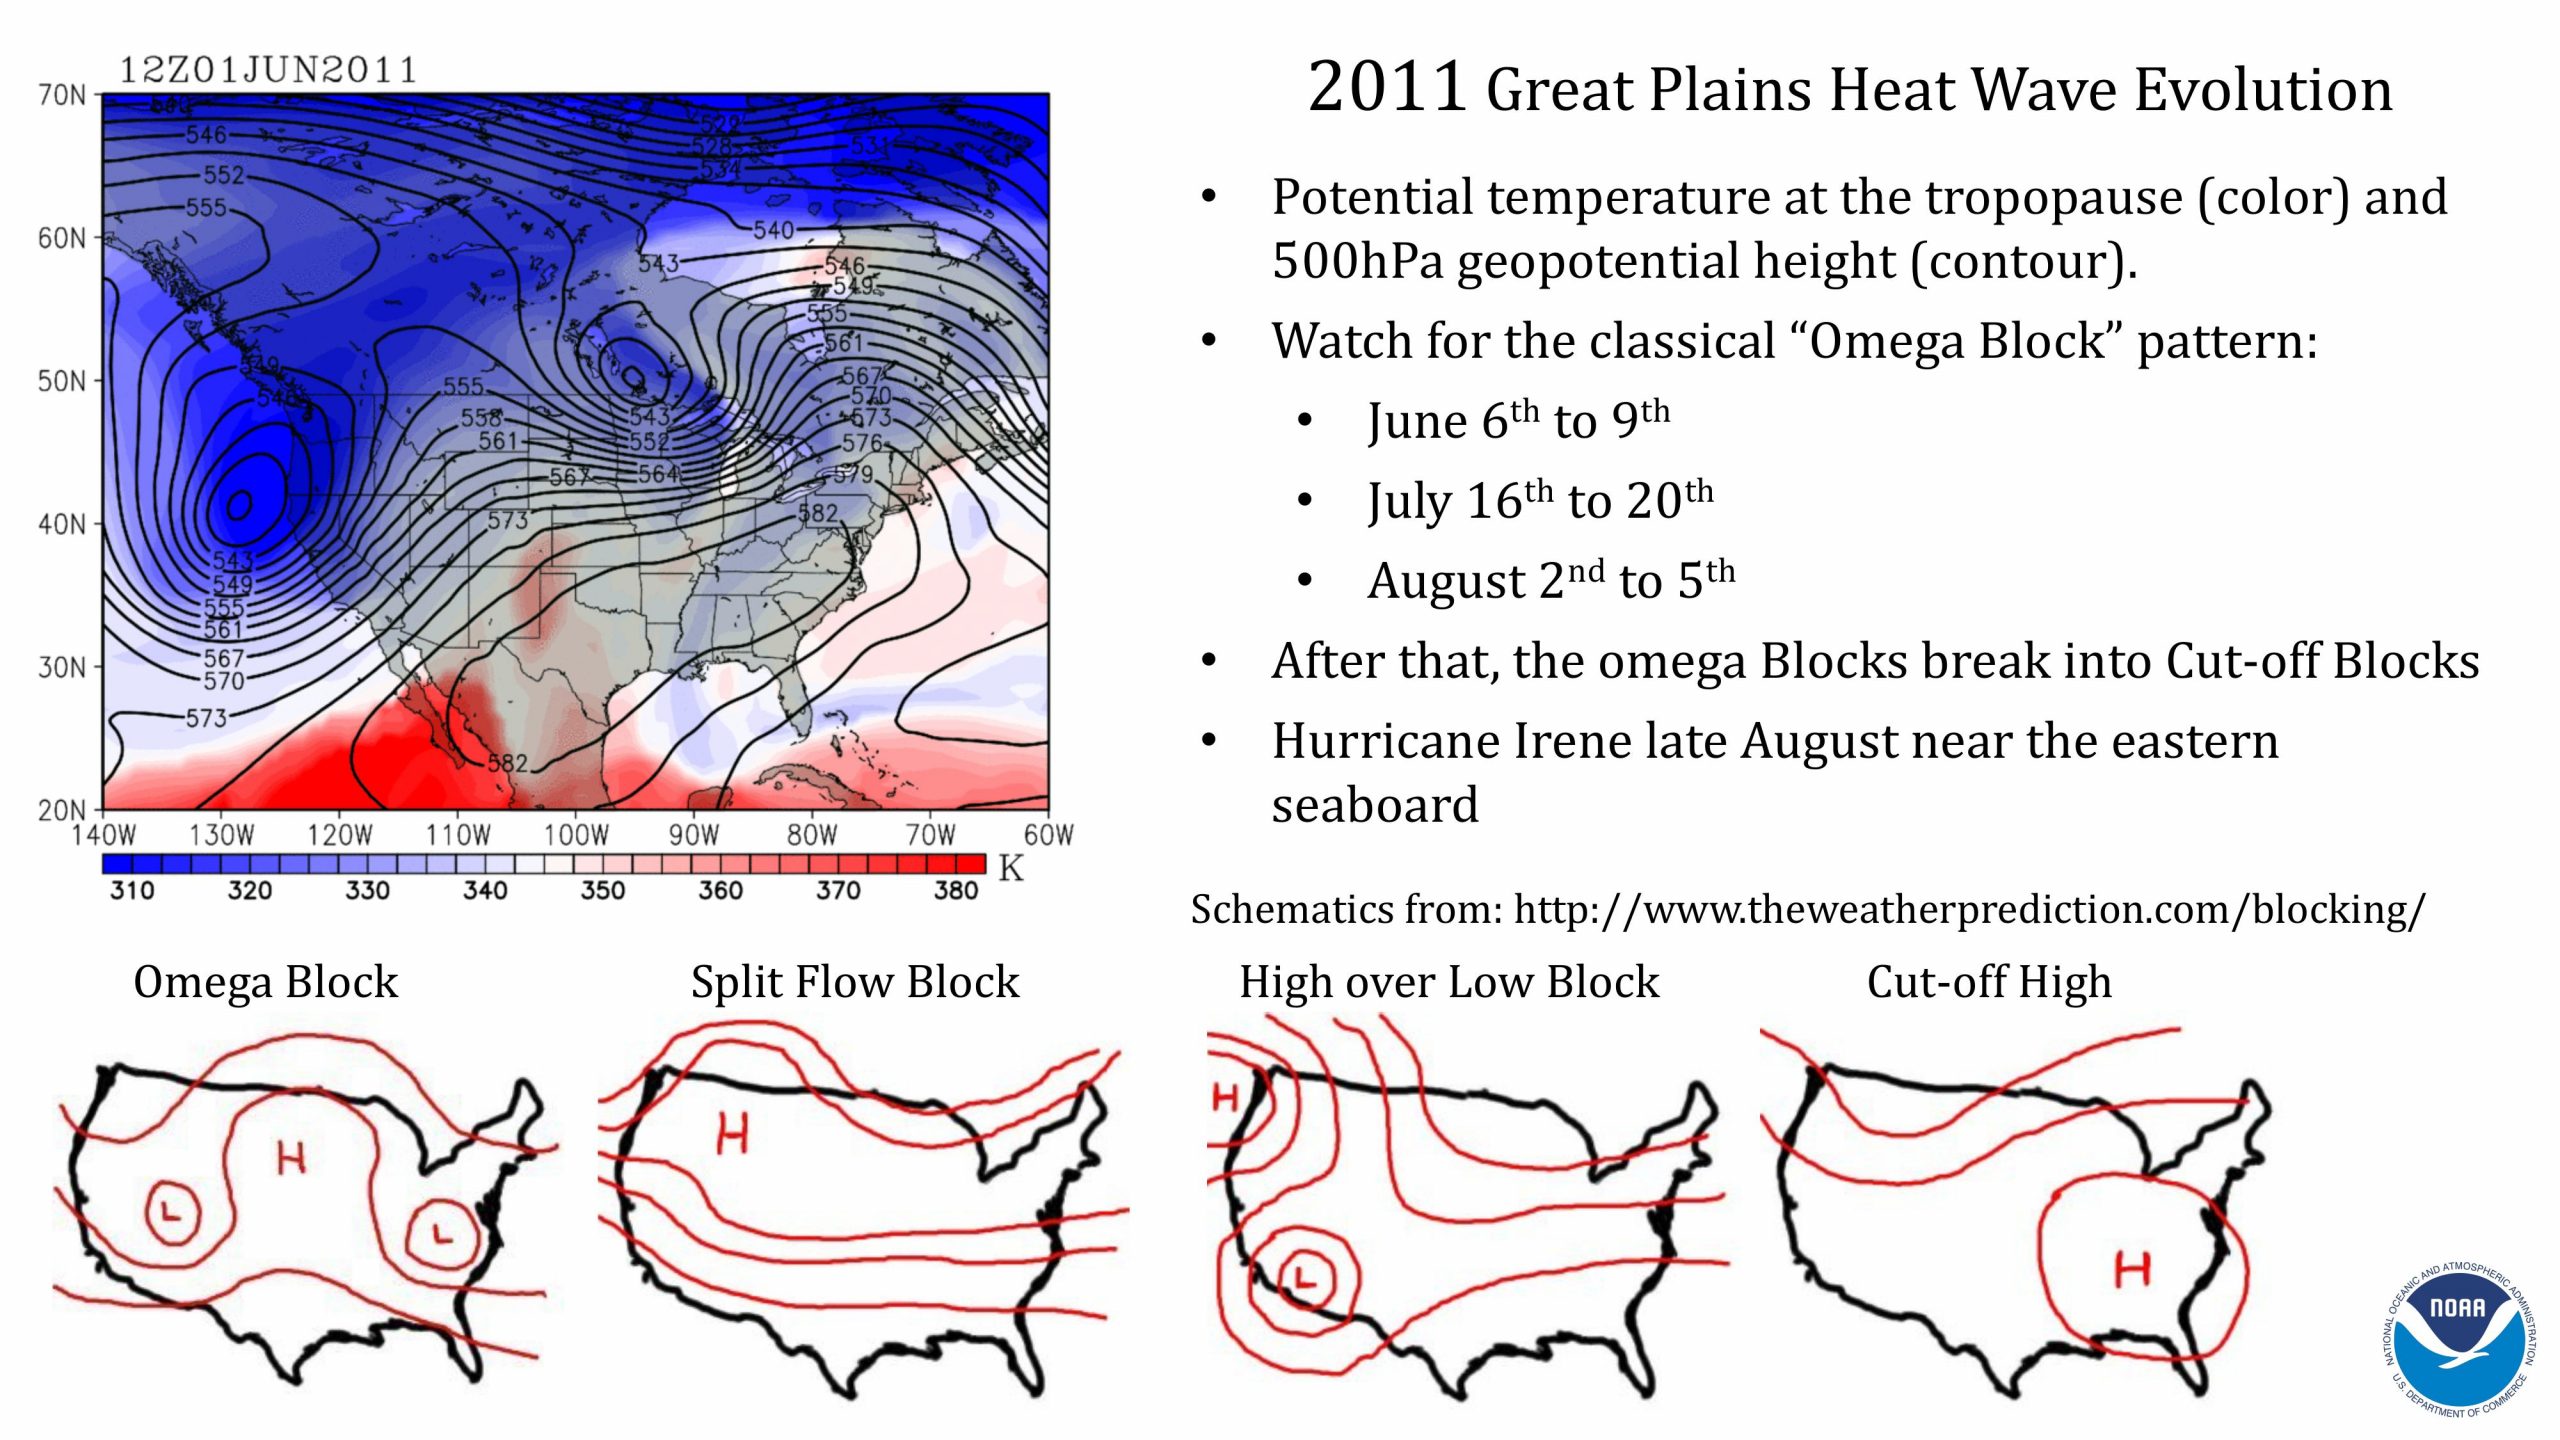 Presentación de Hosmay López sobre los monzones y las olas de calor. Diapositiva 6